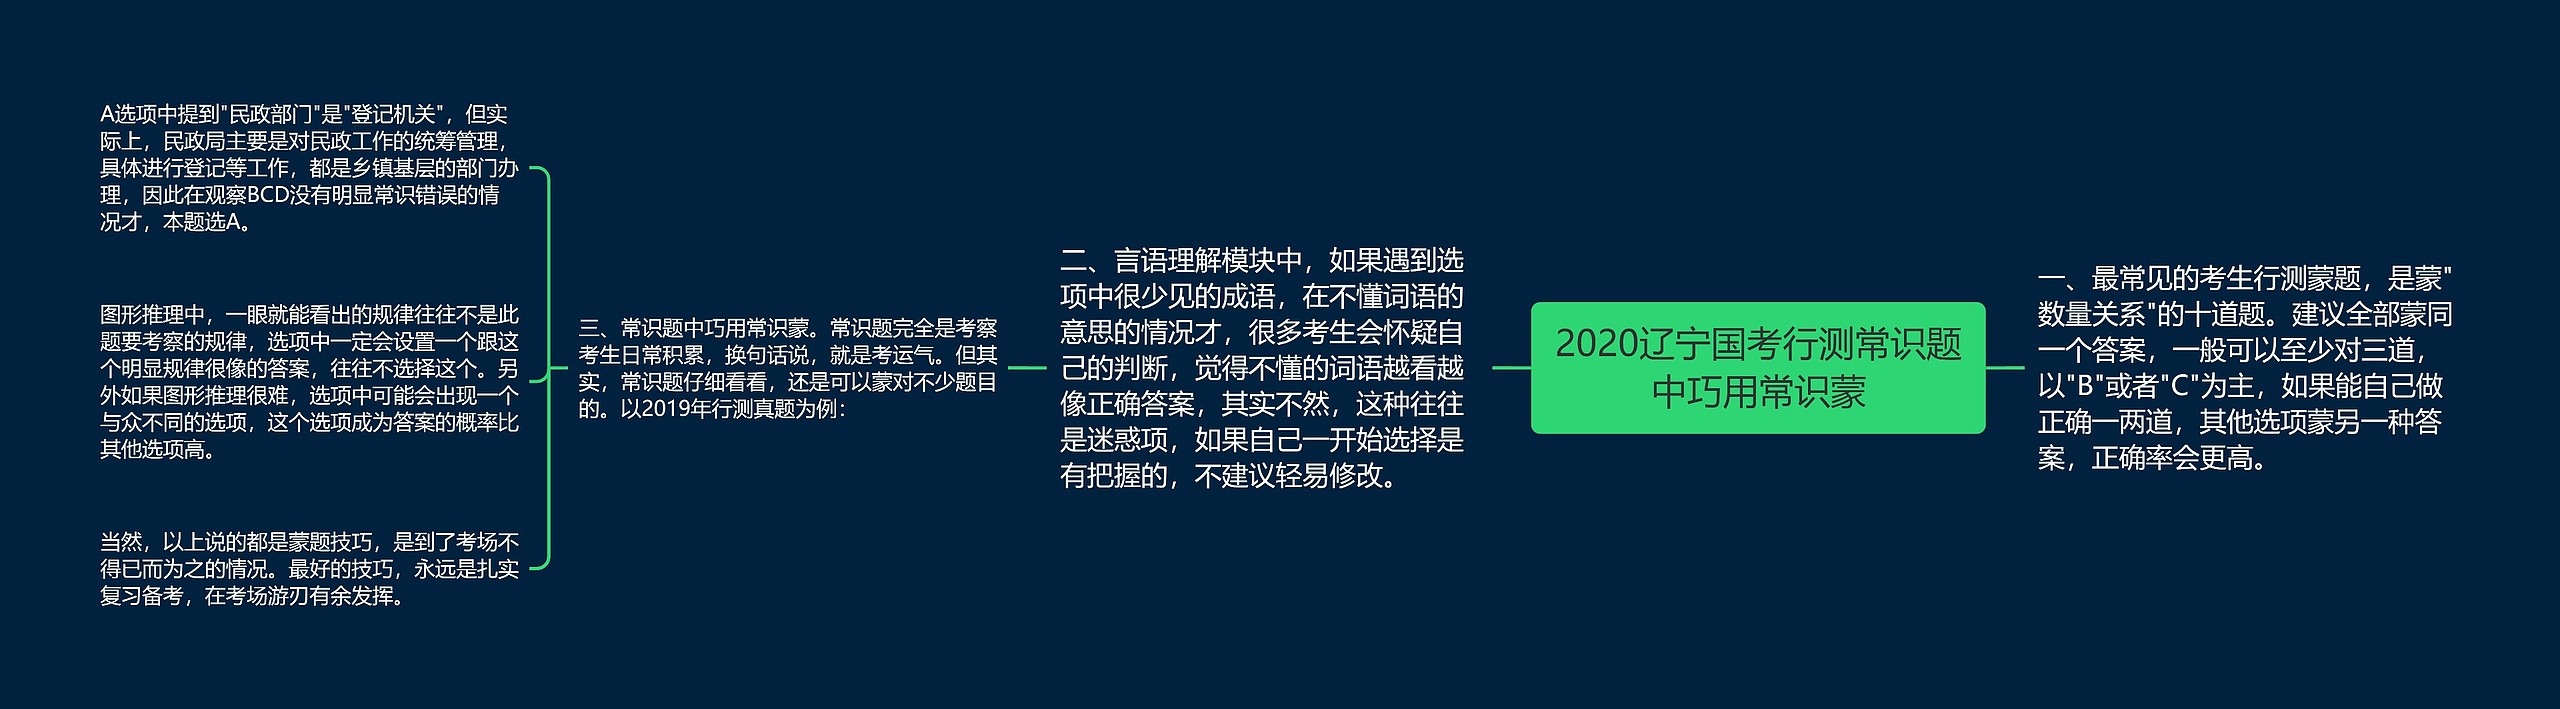 2020辽宁国考行测常识题中巧用常识蒙思维导图